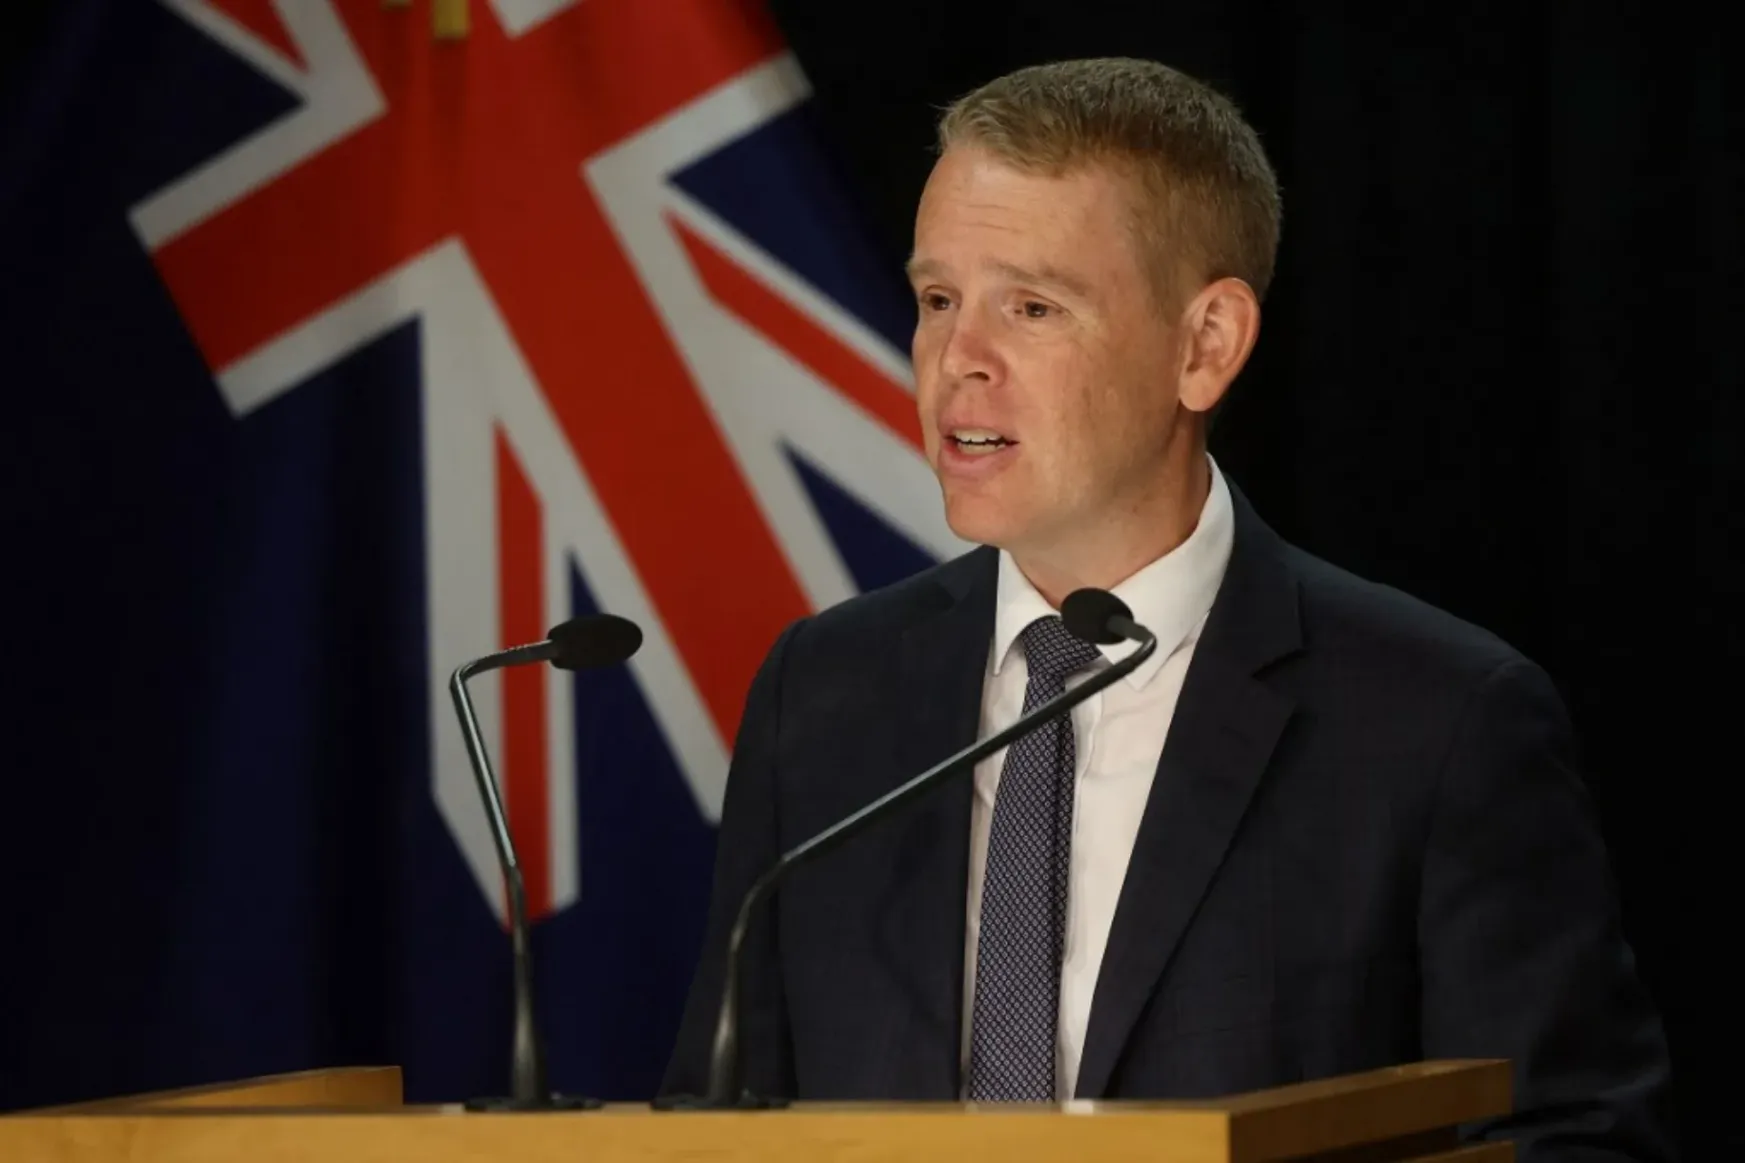 Chris Hipkinst választották meg Új-Zéland miniszterelnökének